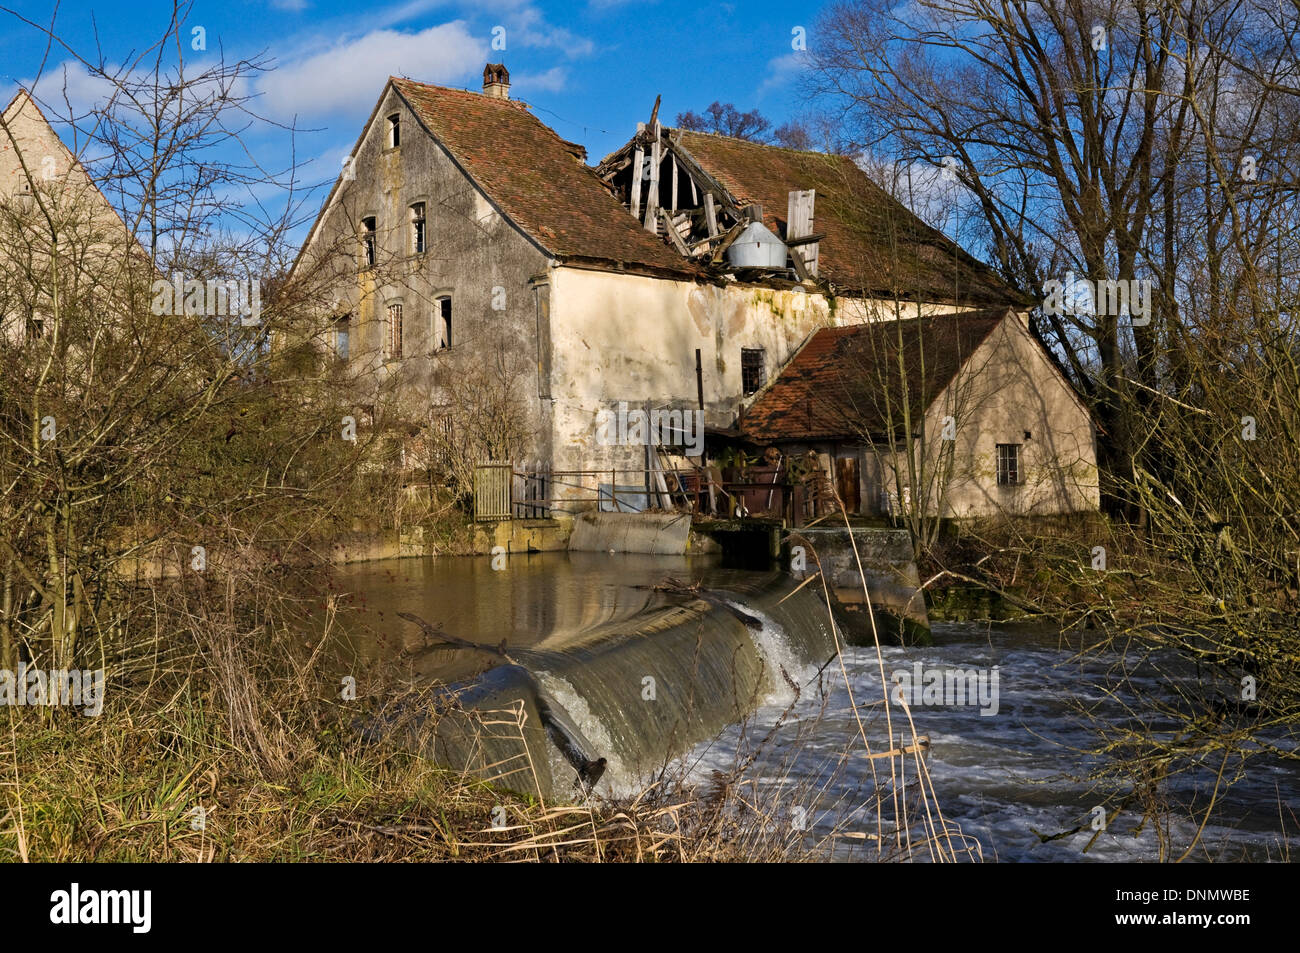 Derelict watermill on River Aisch, Höchstadt, Bavaria, Germany Stock Photo